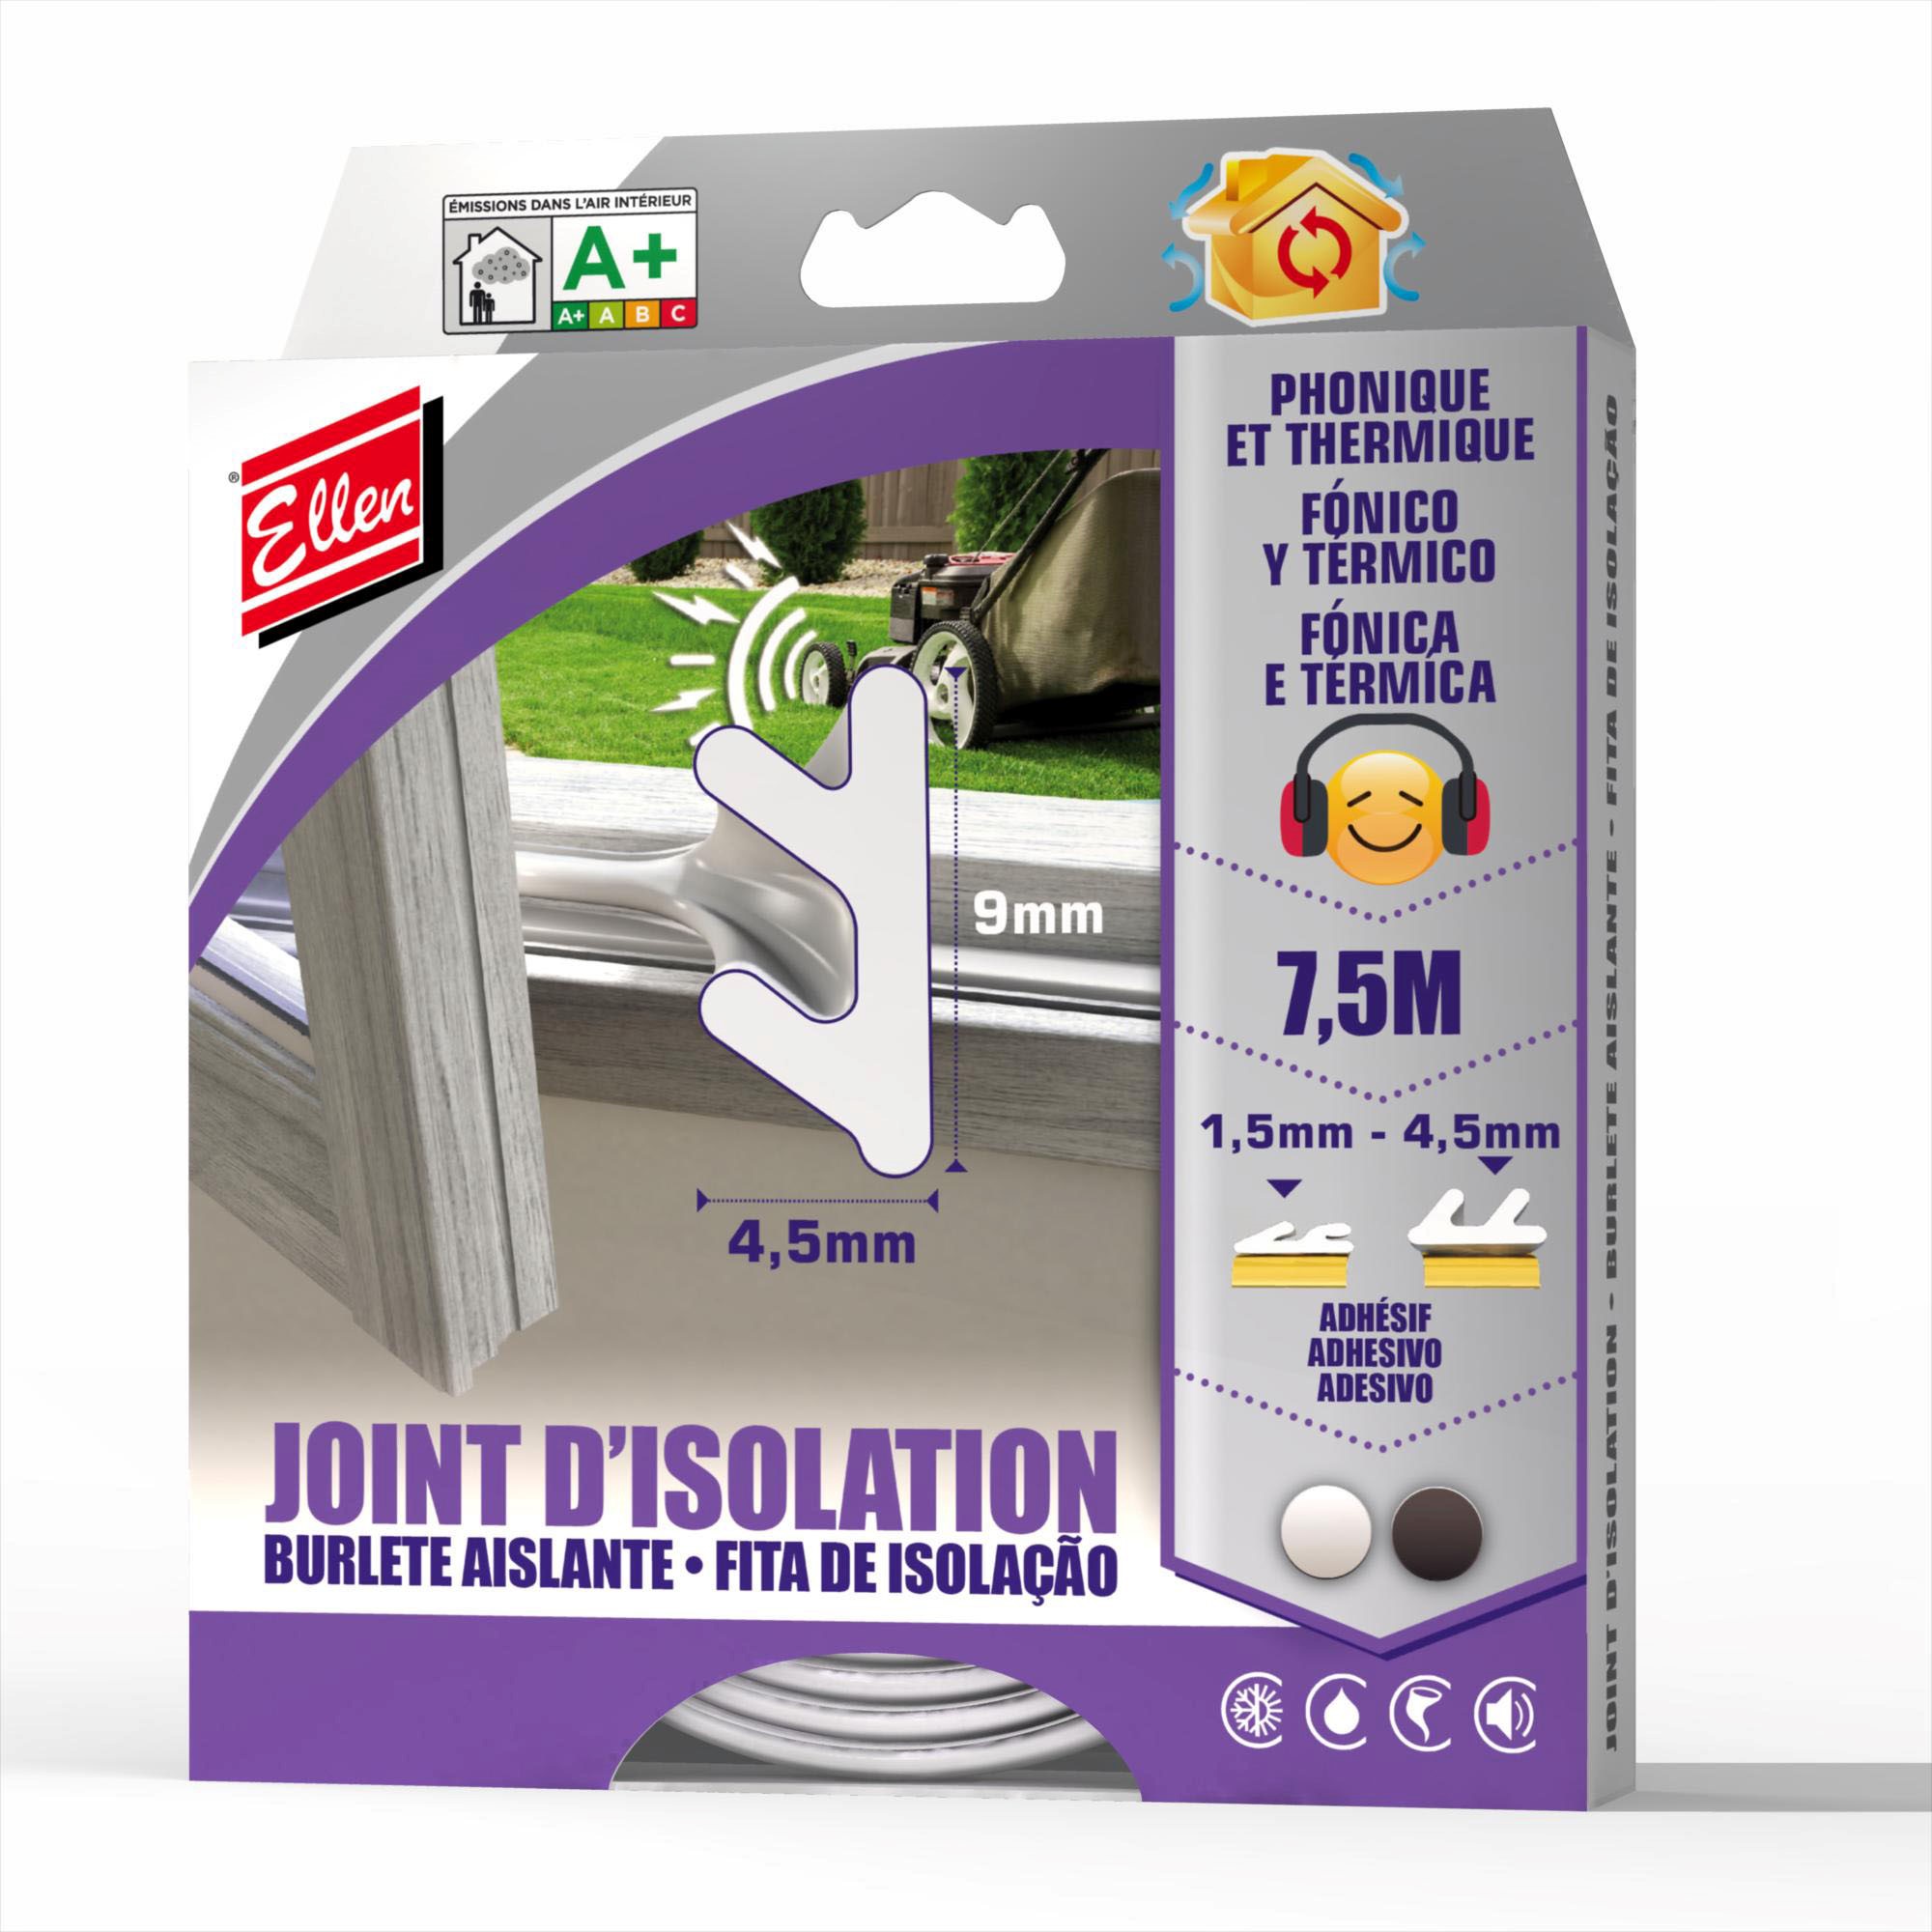 Joint isolation adhésif phonique/thermique 7,5m noir - ELLEN